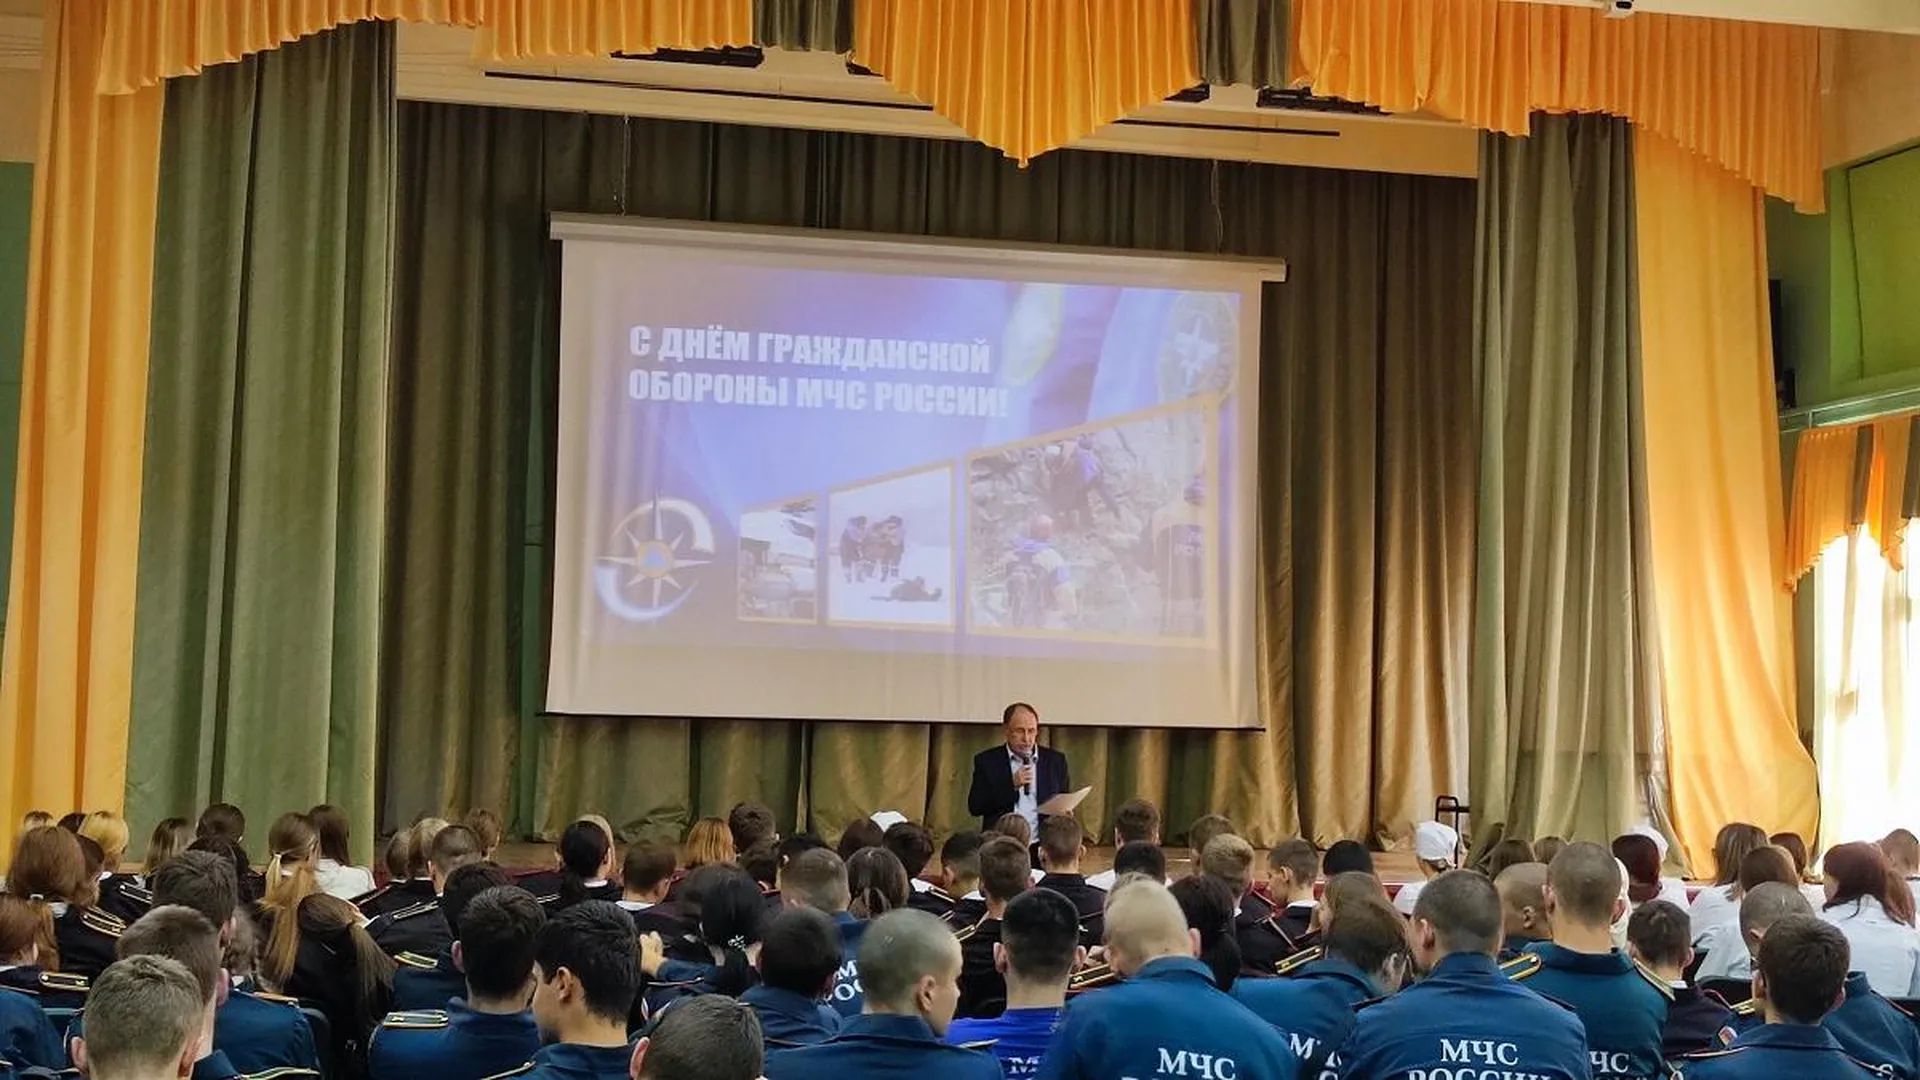 В колледже «Подмосковье» прошли уроки, посвященные годовщине со дня образования Гражданской обороны в России